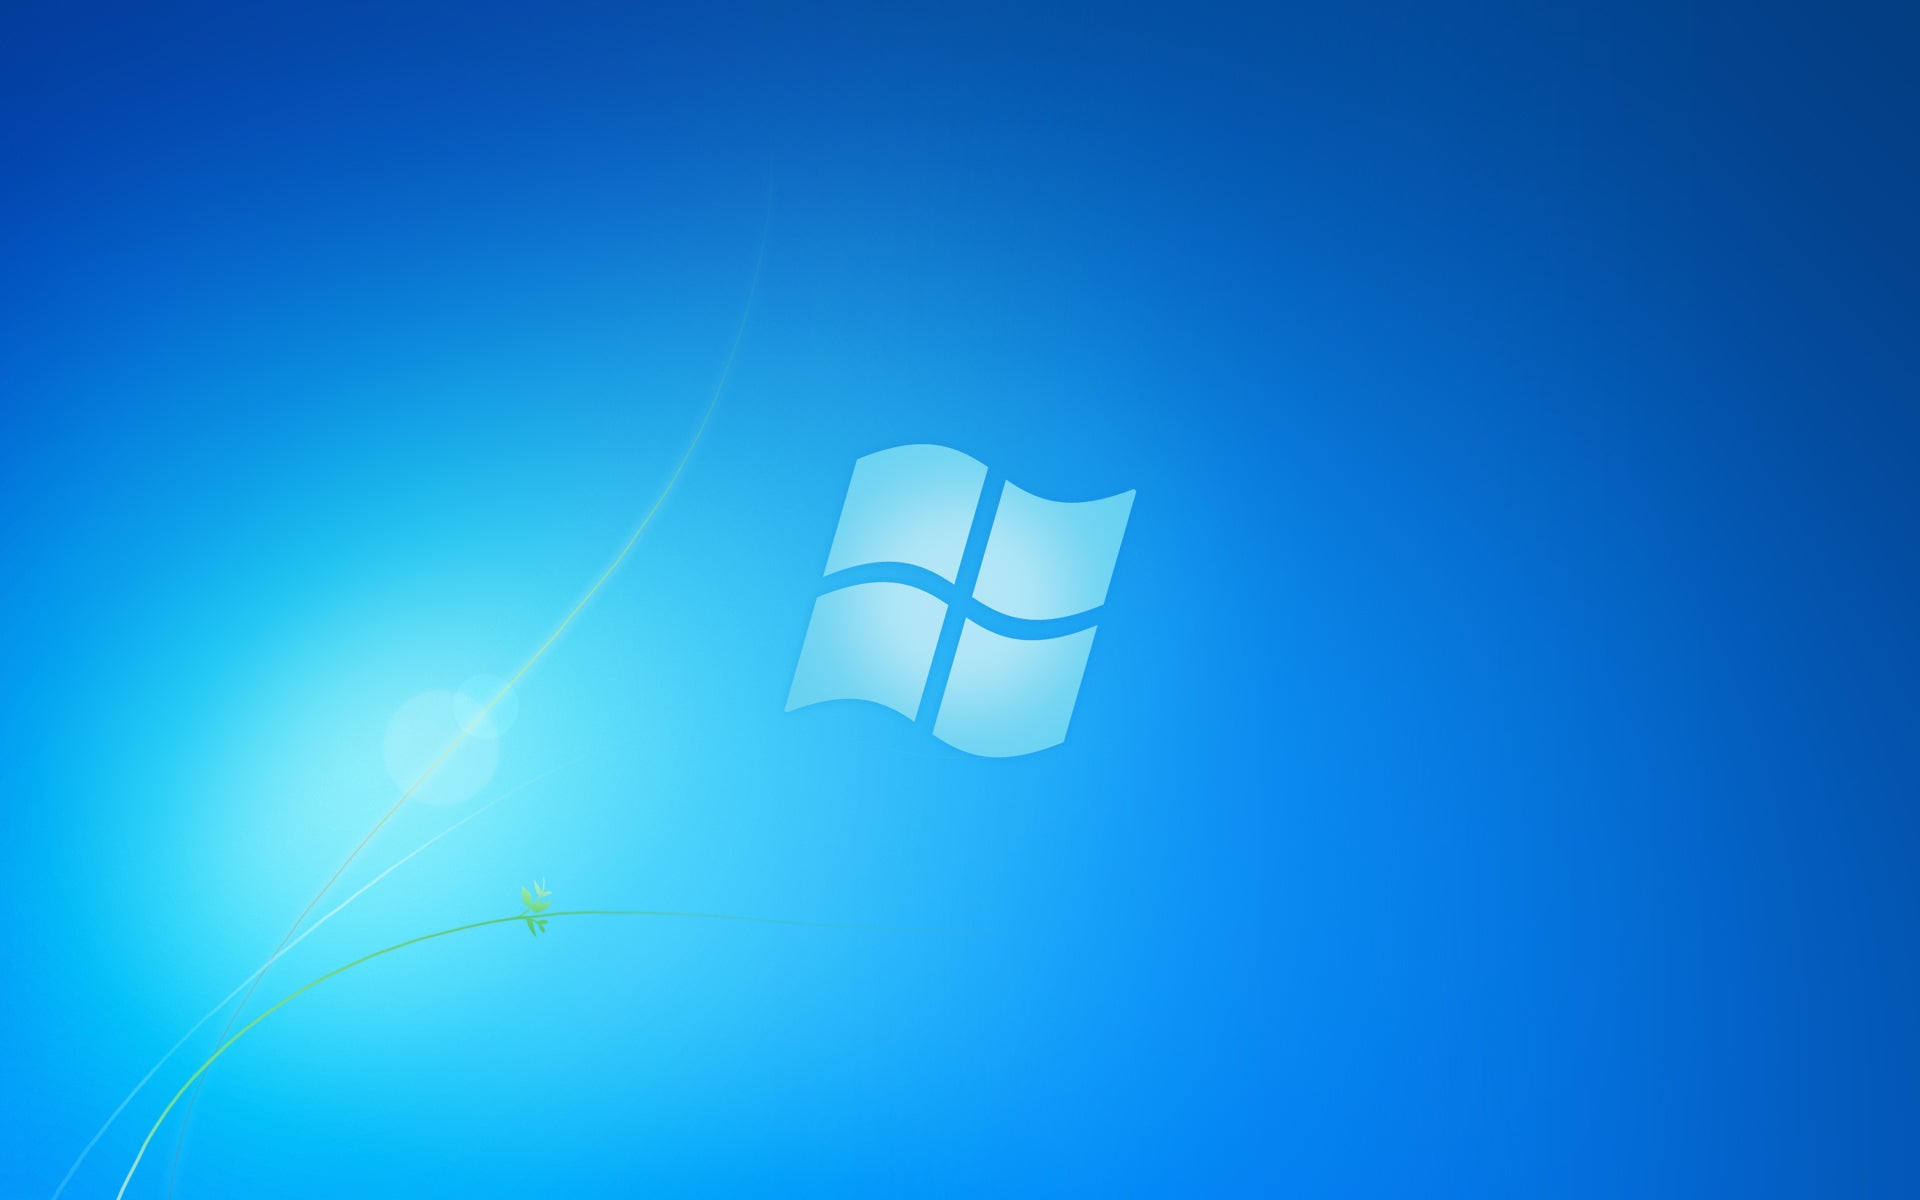 Thay đổi hình nền Windows 7 Starter miễn phí: Bạn đã nhàm chán với hình nền mặc định của Windows 7 Starter và muốn thay đổi với những hình nền mới lạ và đẹp mắt? Hãy tìm kiếm và tải ngay những hình nền miễn phí phù hợp với loại máy tính của bạn và truyền tải phong cách cá nhân đến màn hình desktop.